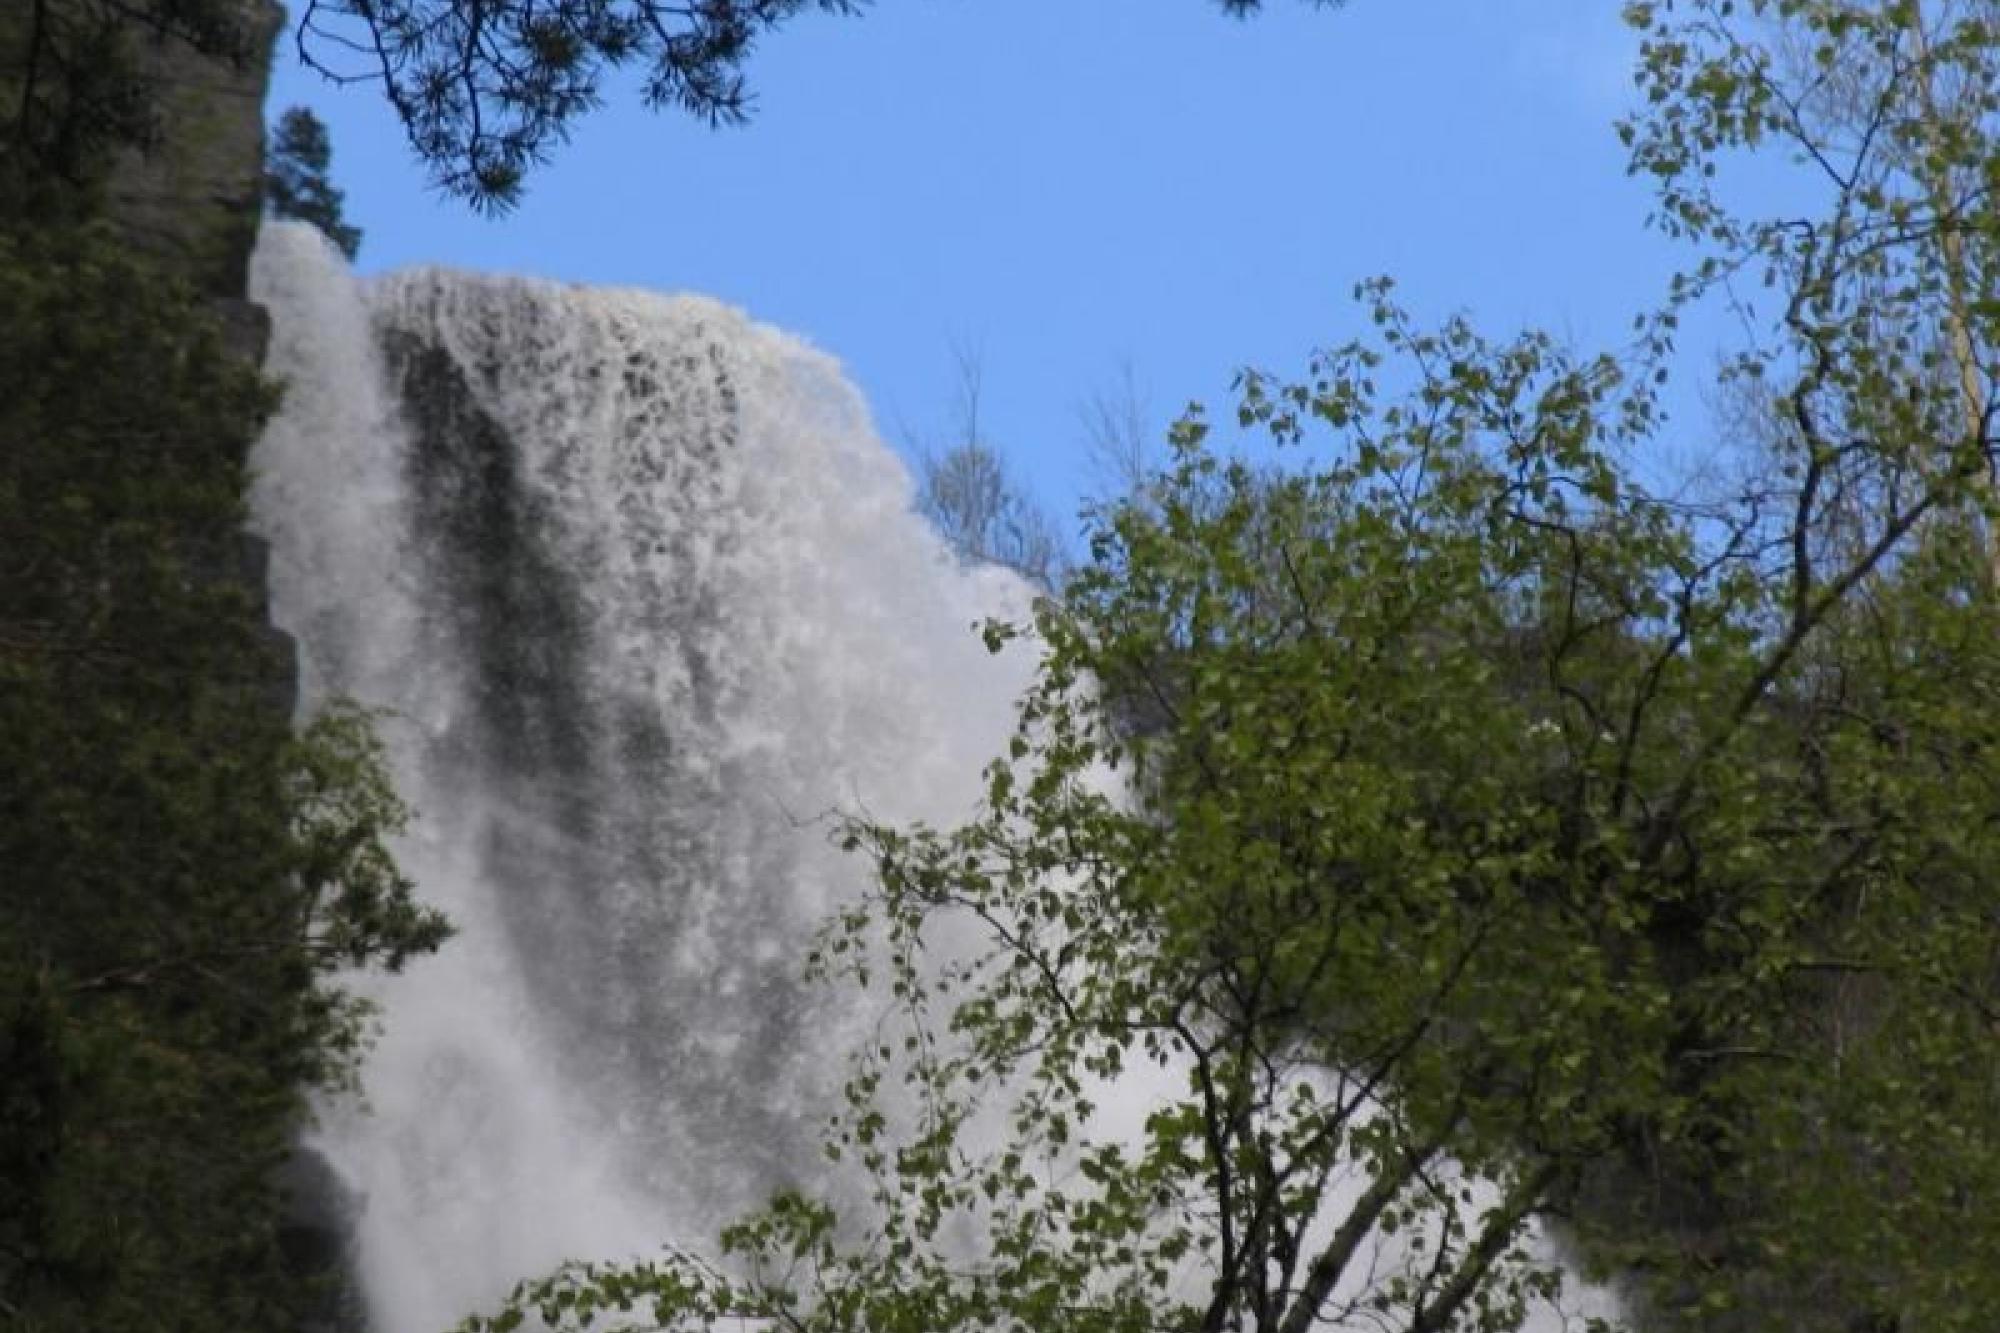 Holvikfossen Waterfall